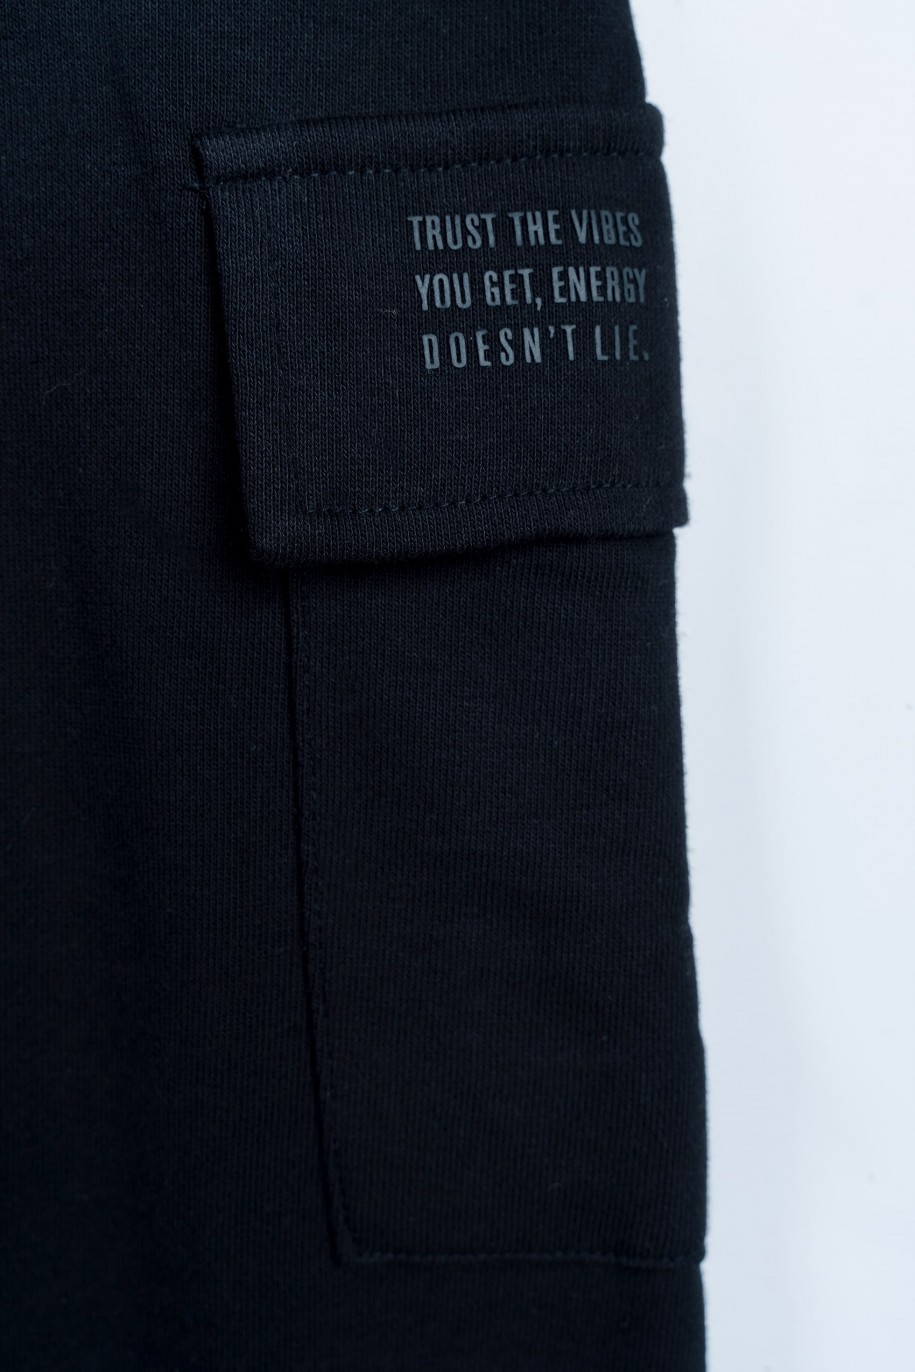 Czarne spodnie dresowe z przestrzennymi kieszeniami na nogawkach - 46984